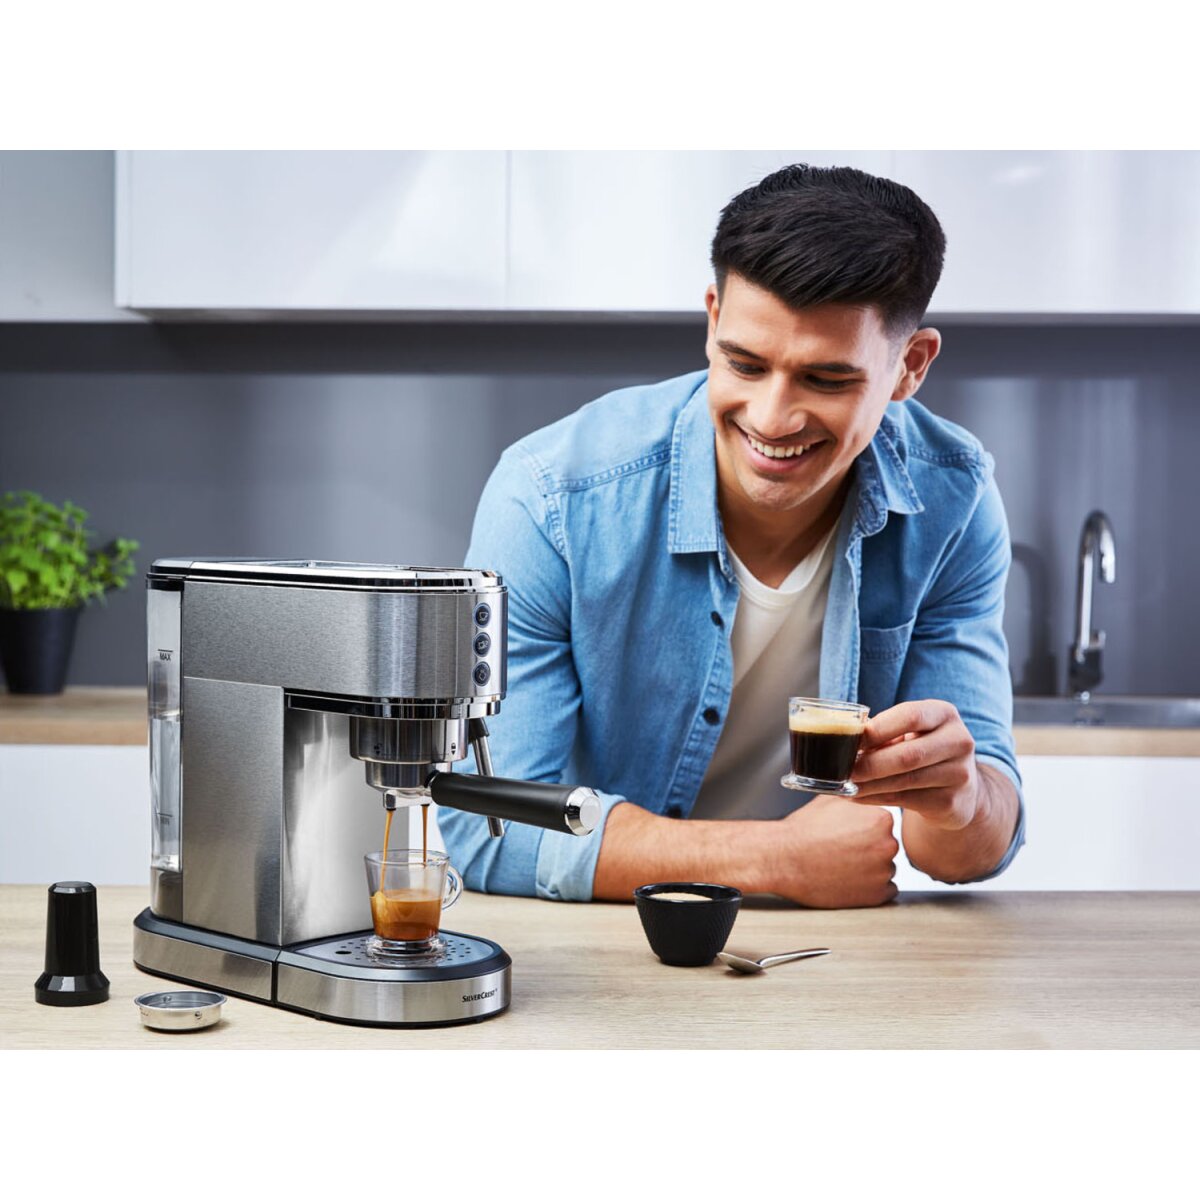 Slim - TOOLS Espresso B-Ware SILVERCREST® B2, 1350 für 34,99 SSMS KITCHEN € gut, Siebträgermaschine